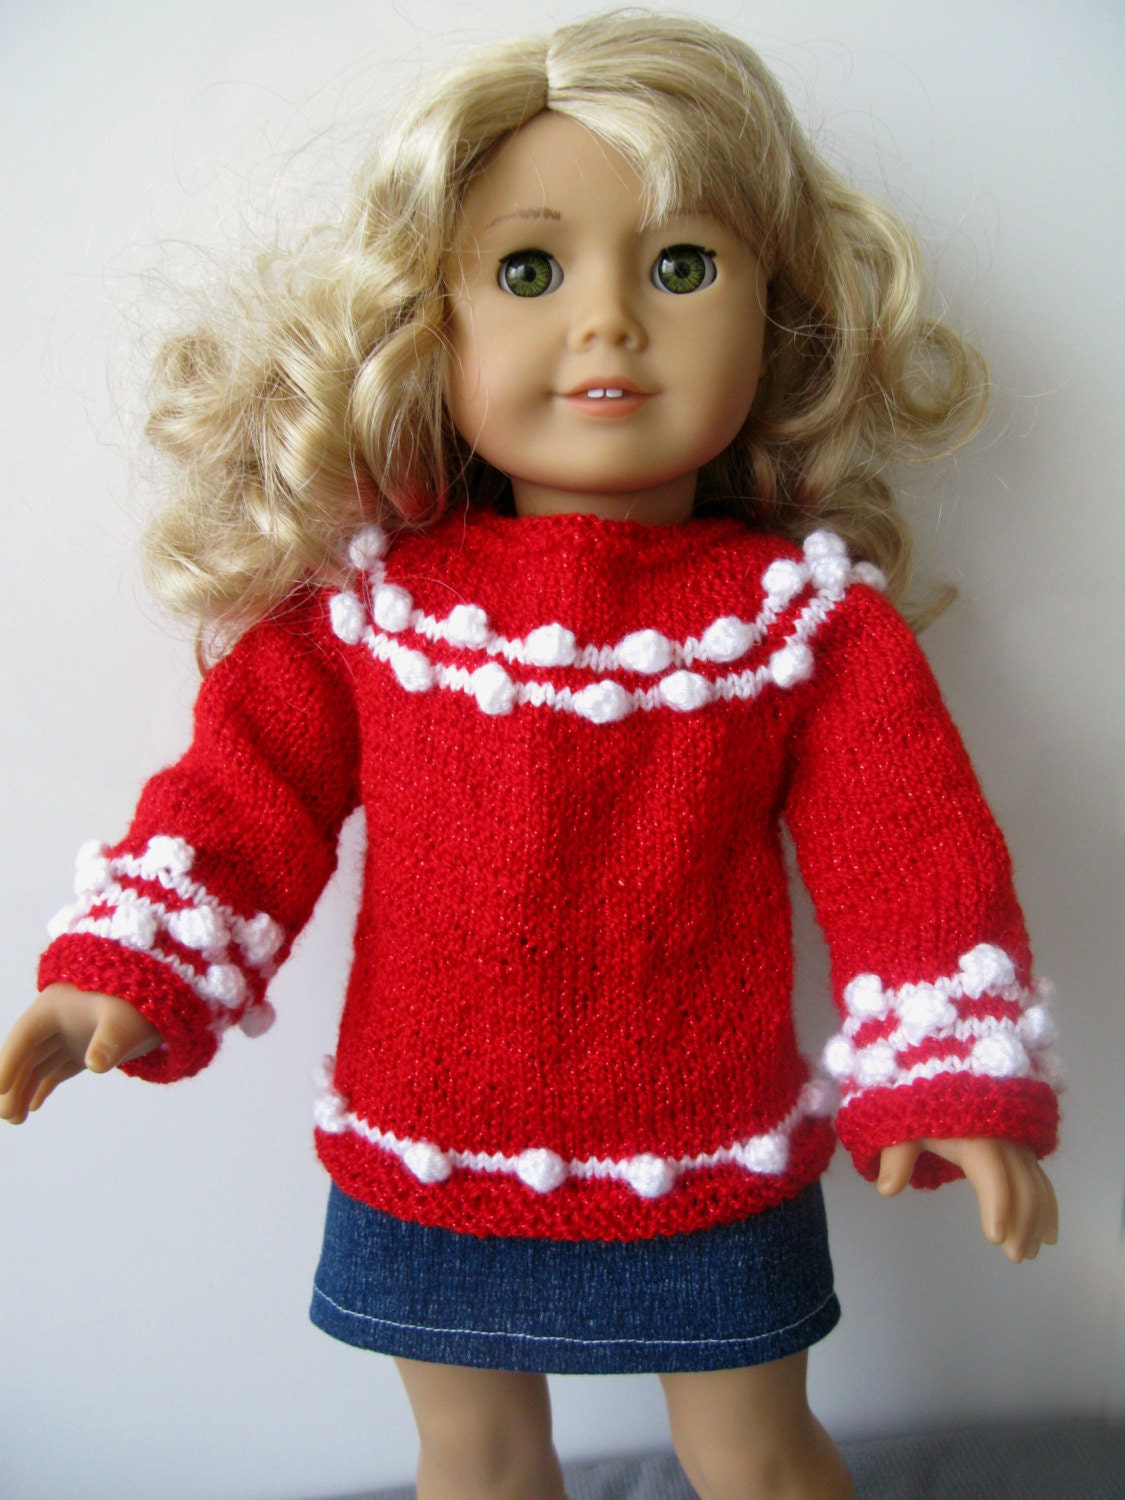 Knitting PATTERN BEGINNER Level for American Girl 18 Inch Doll Starry ...